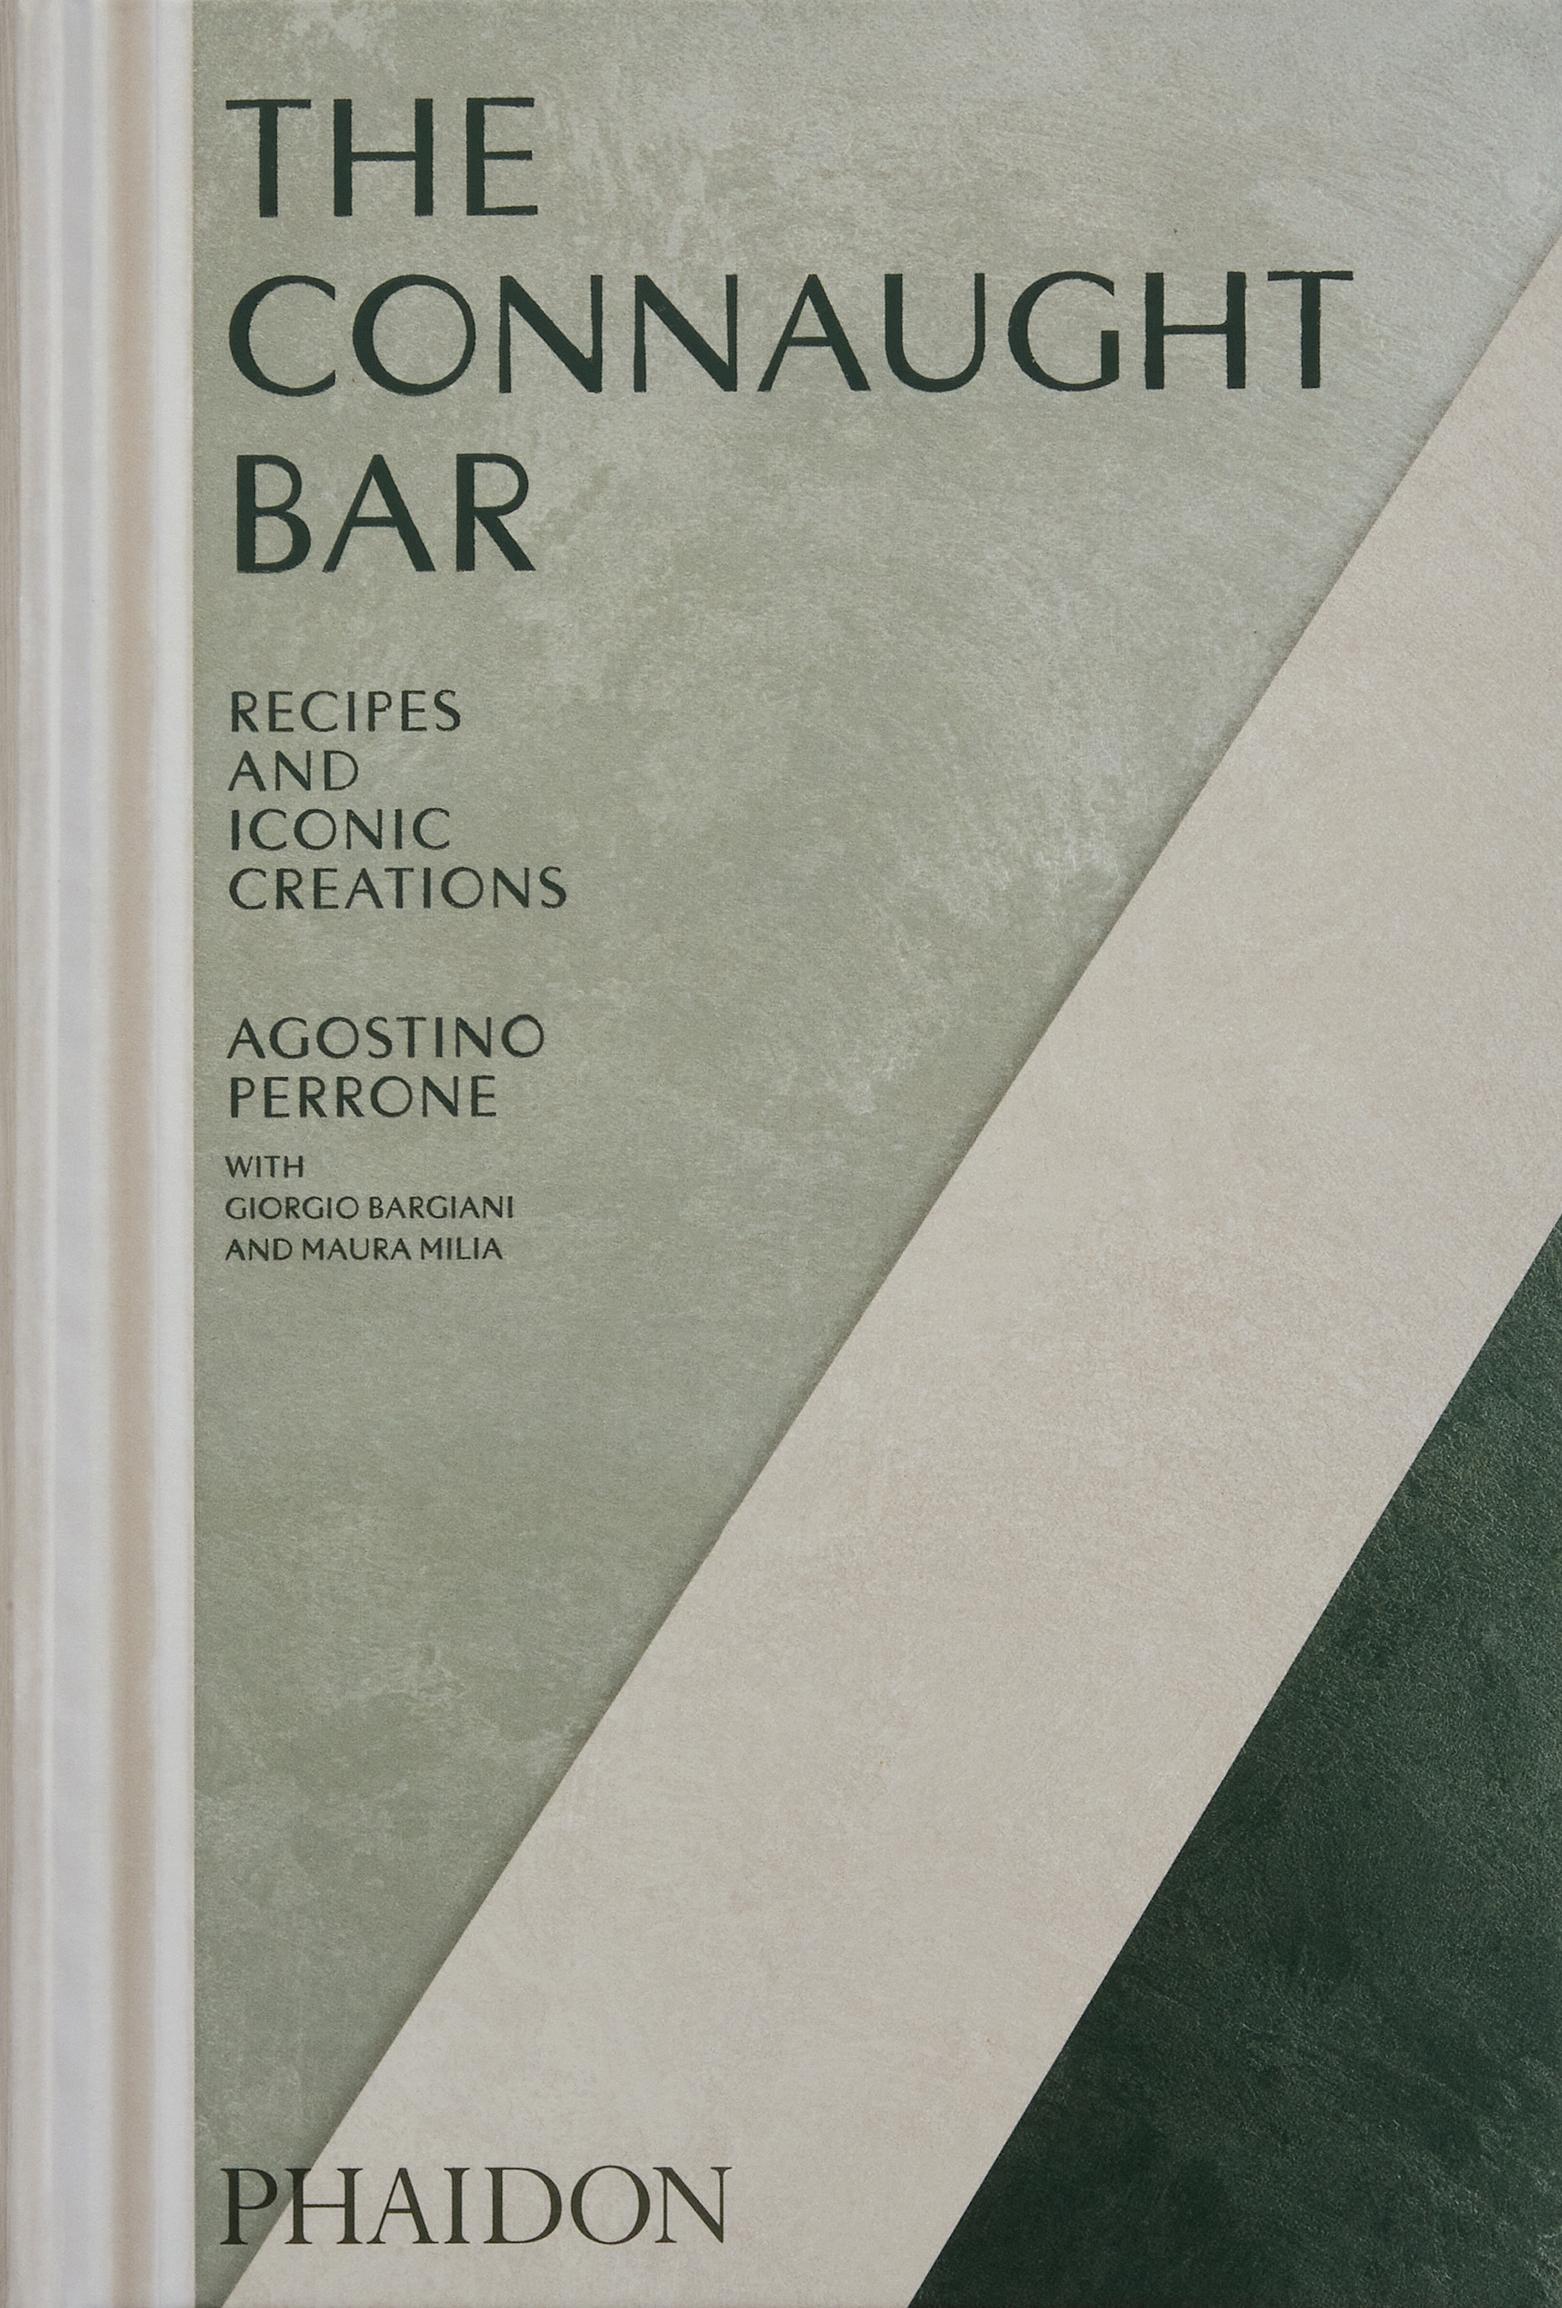 The Connaught Bar Recettes de cocktails et créations Icones